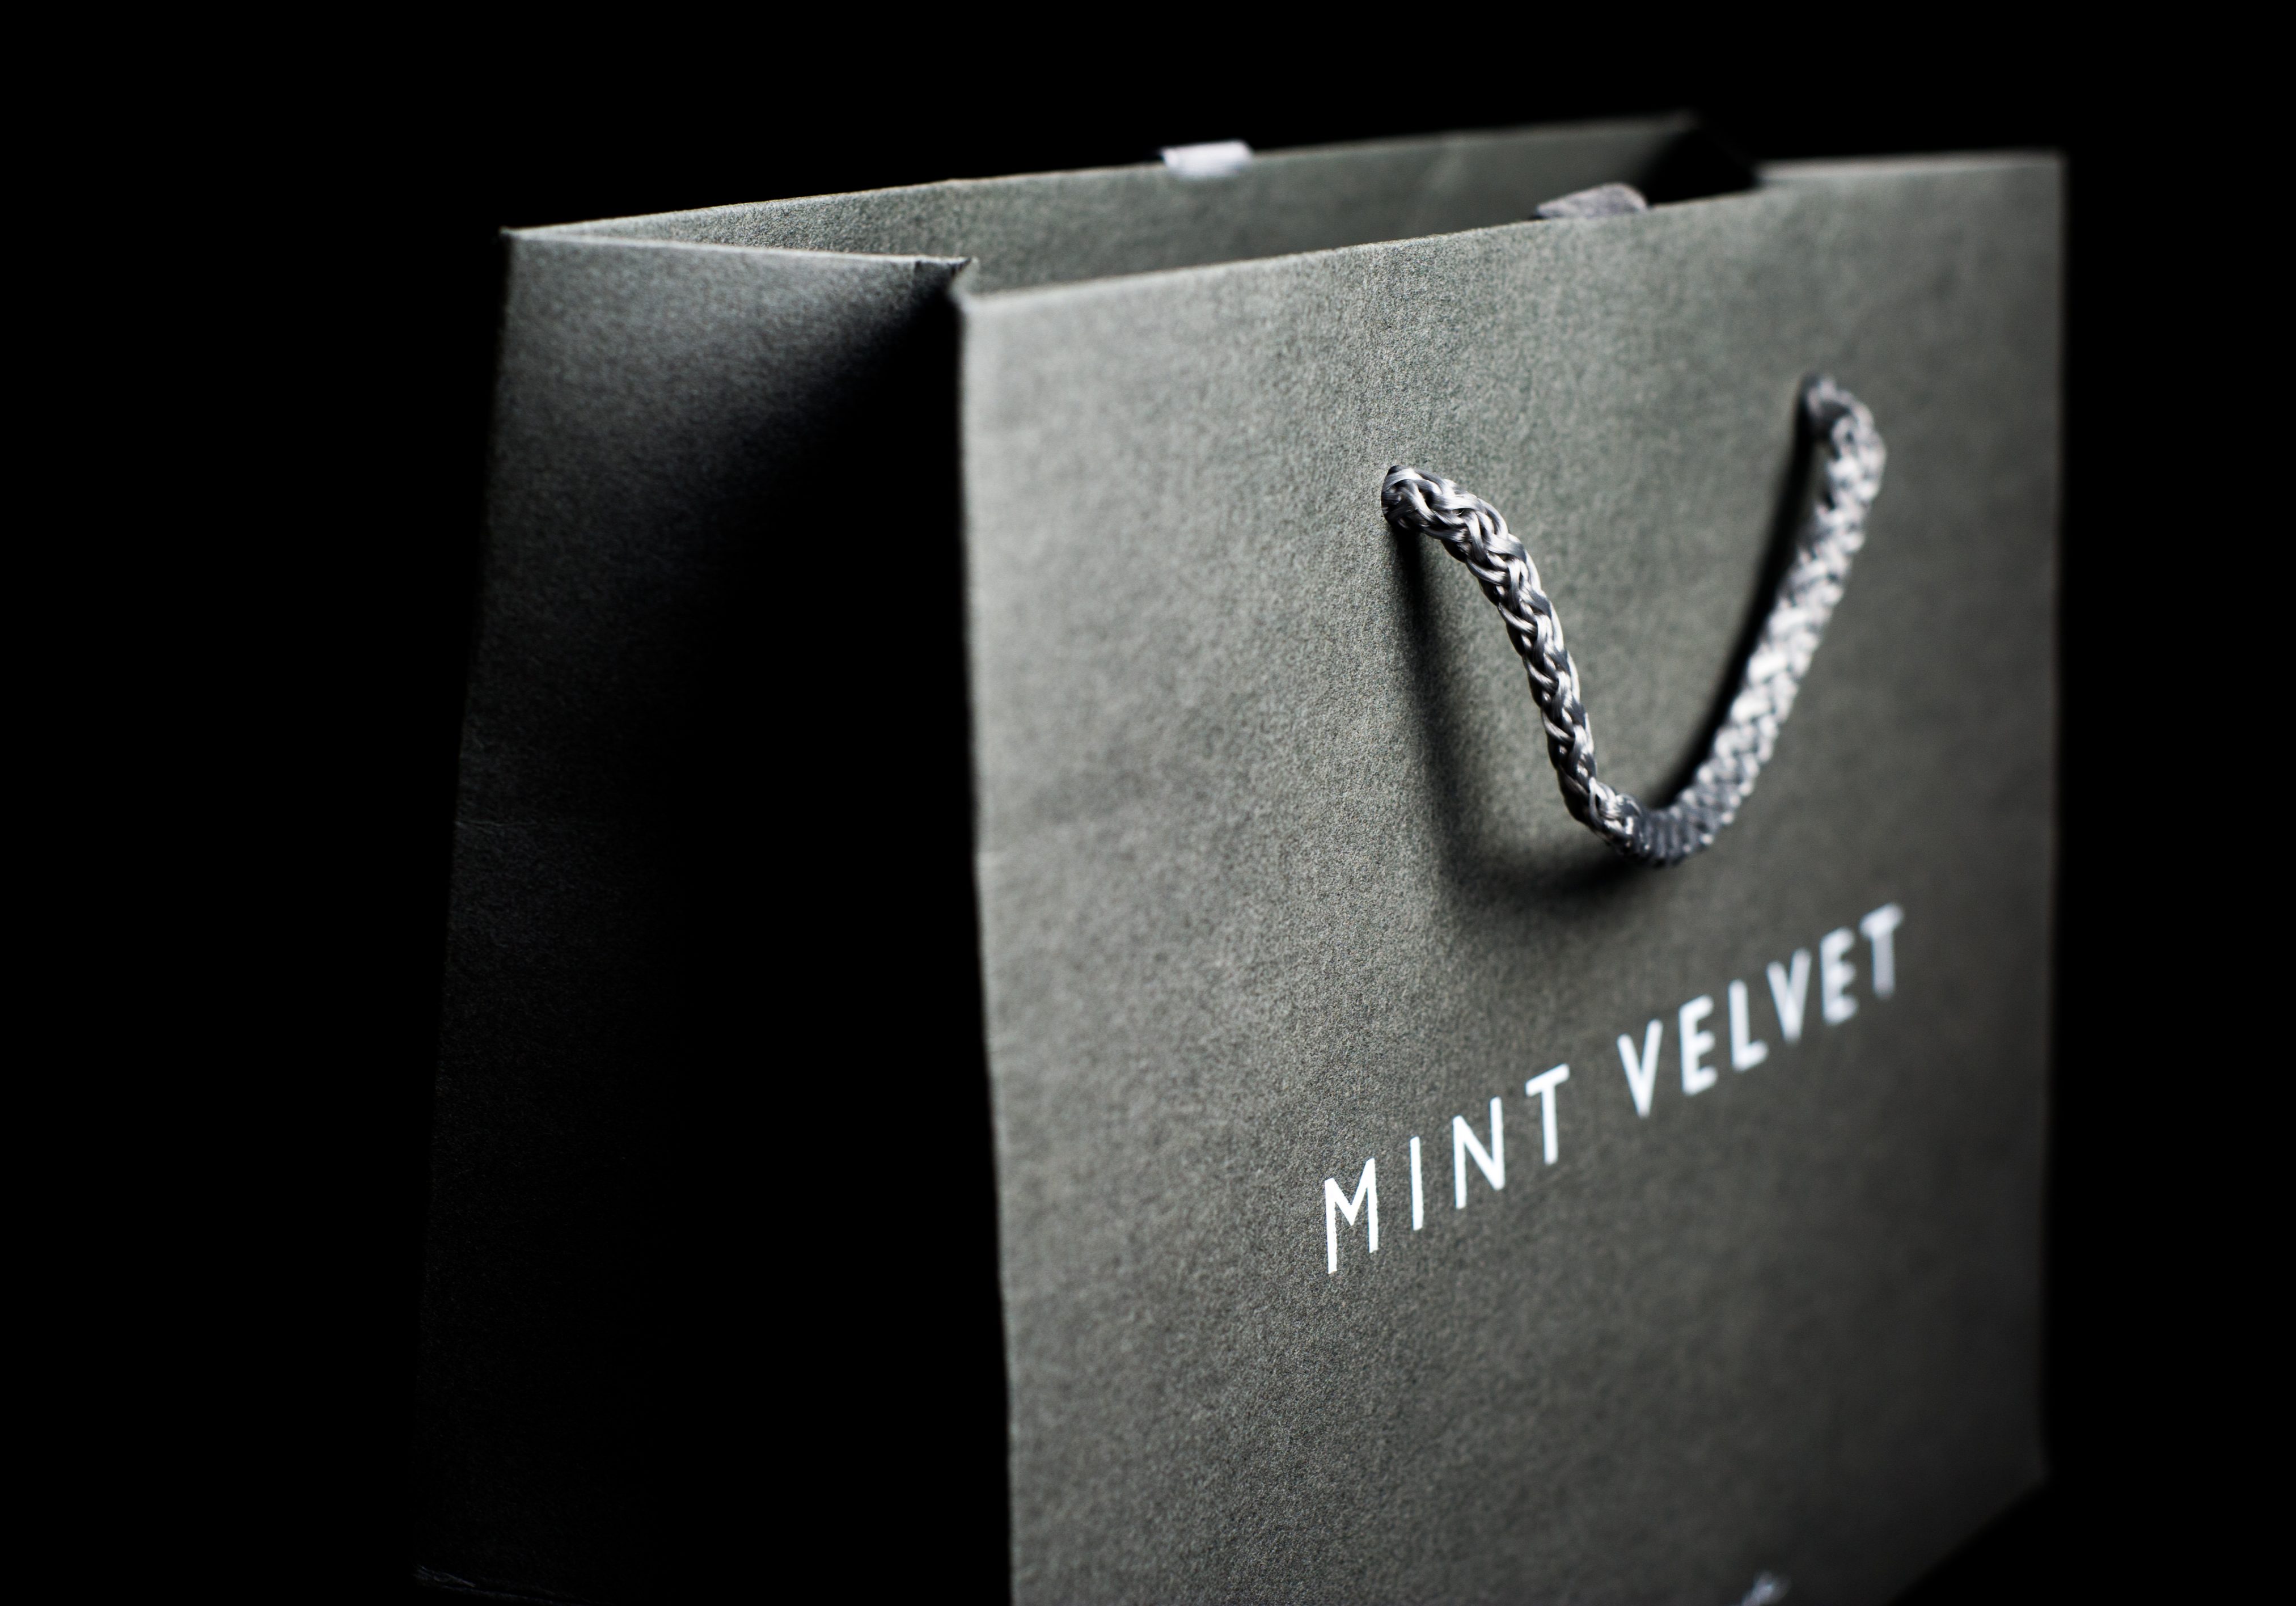 Mint Velvet